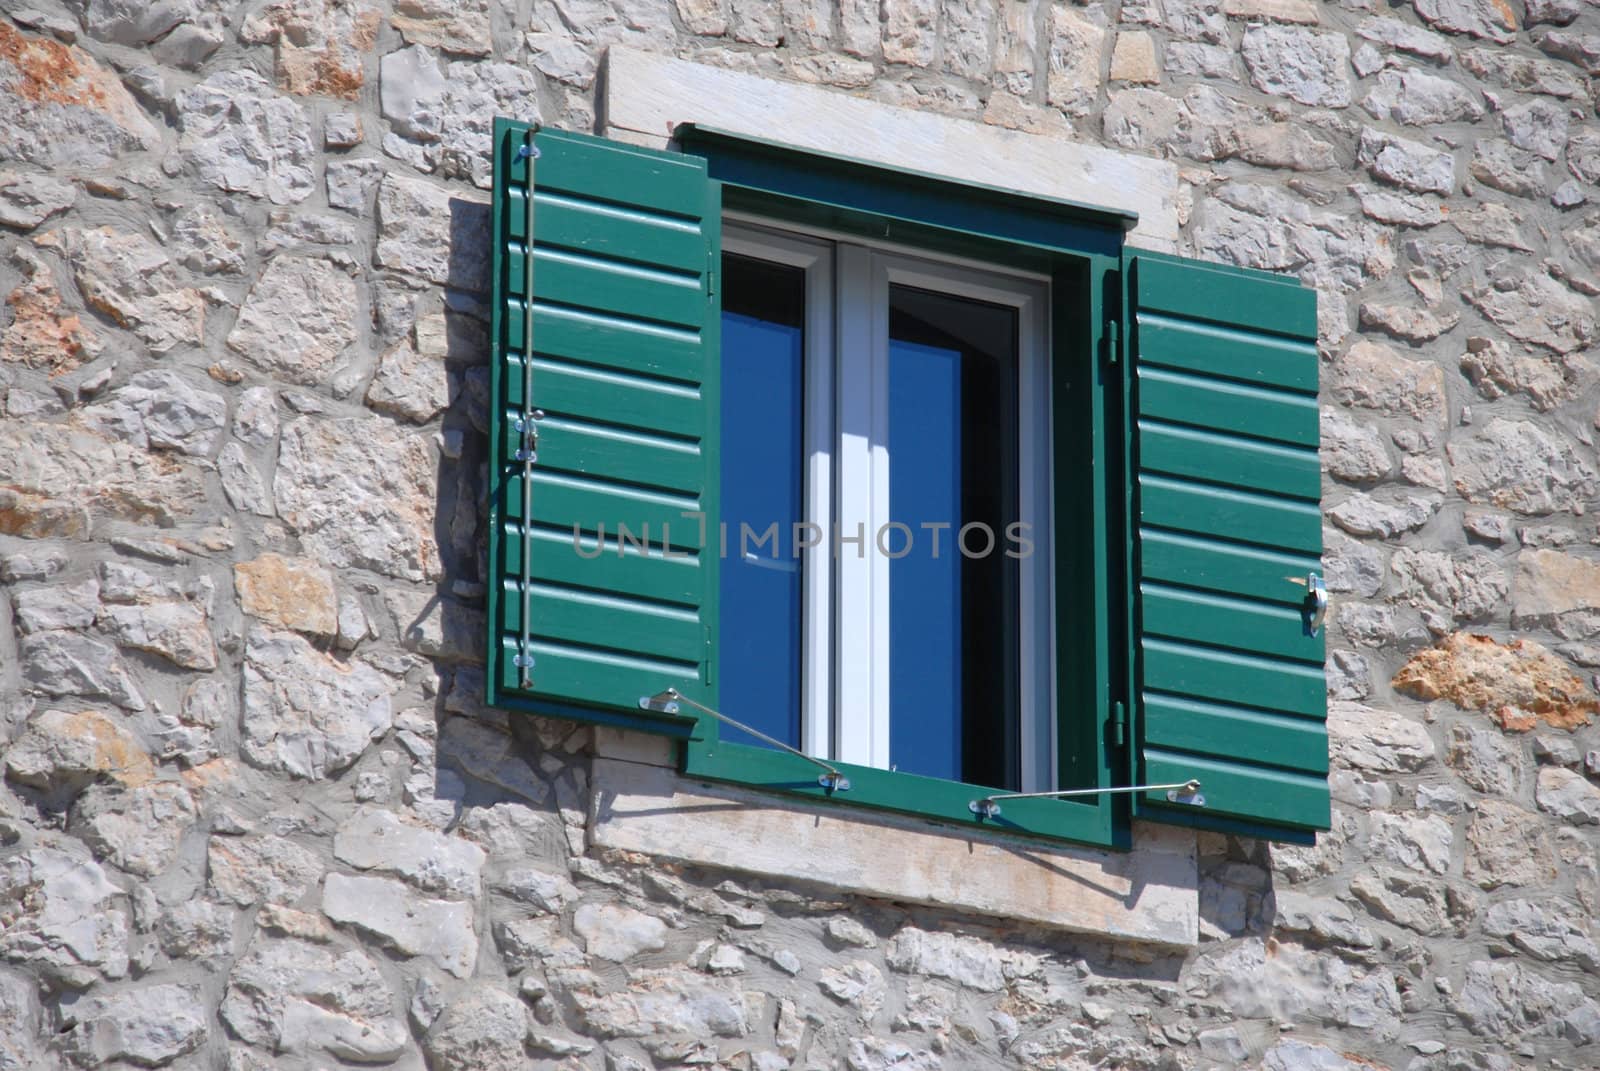 The open green shutter in the window. Croatia, Vodice. by wojciechkozlowski